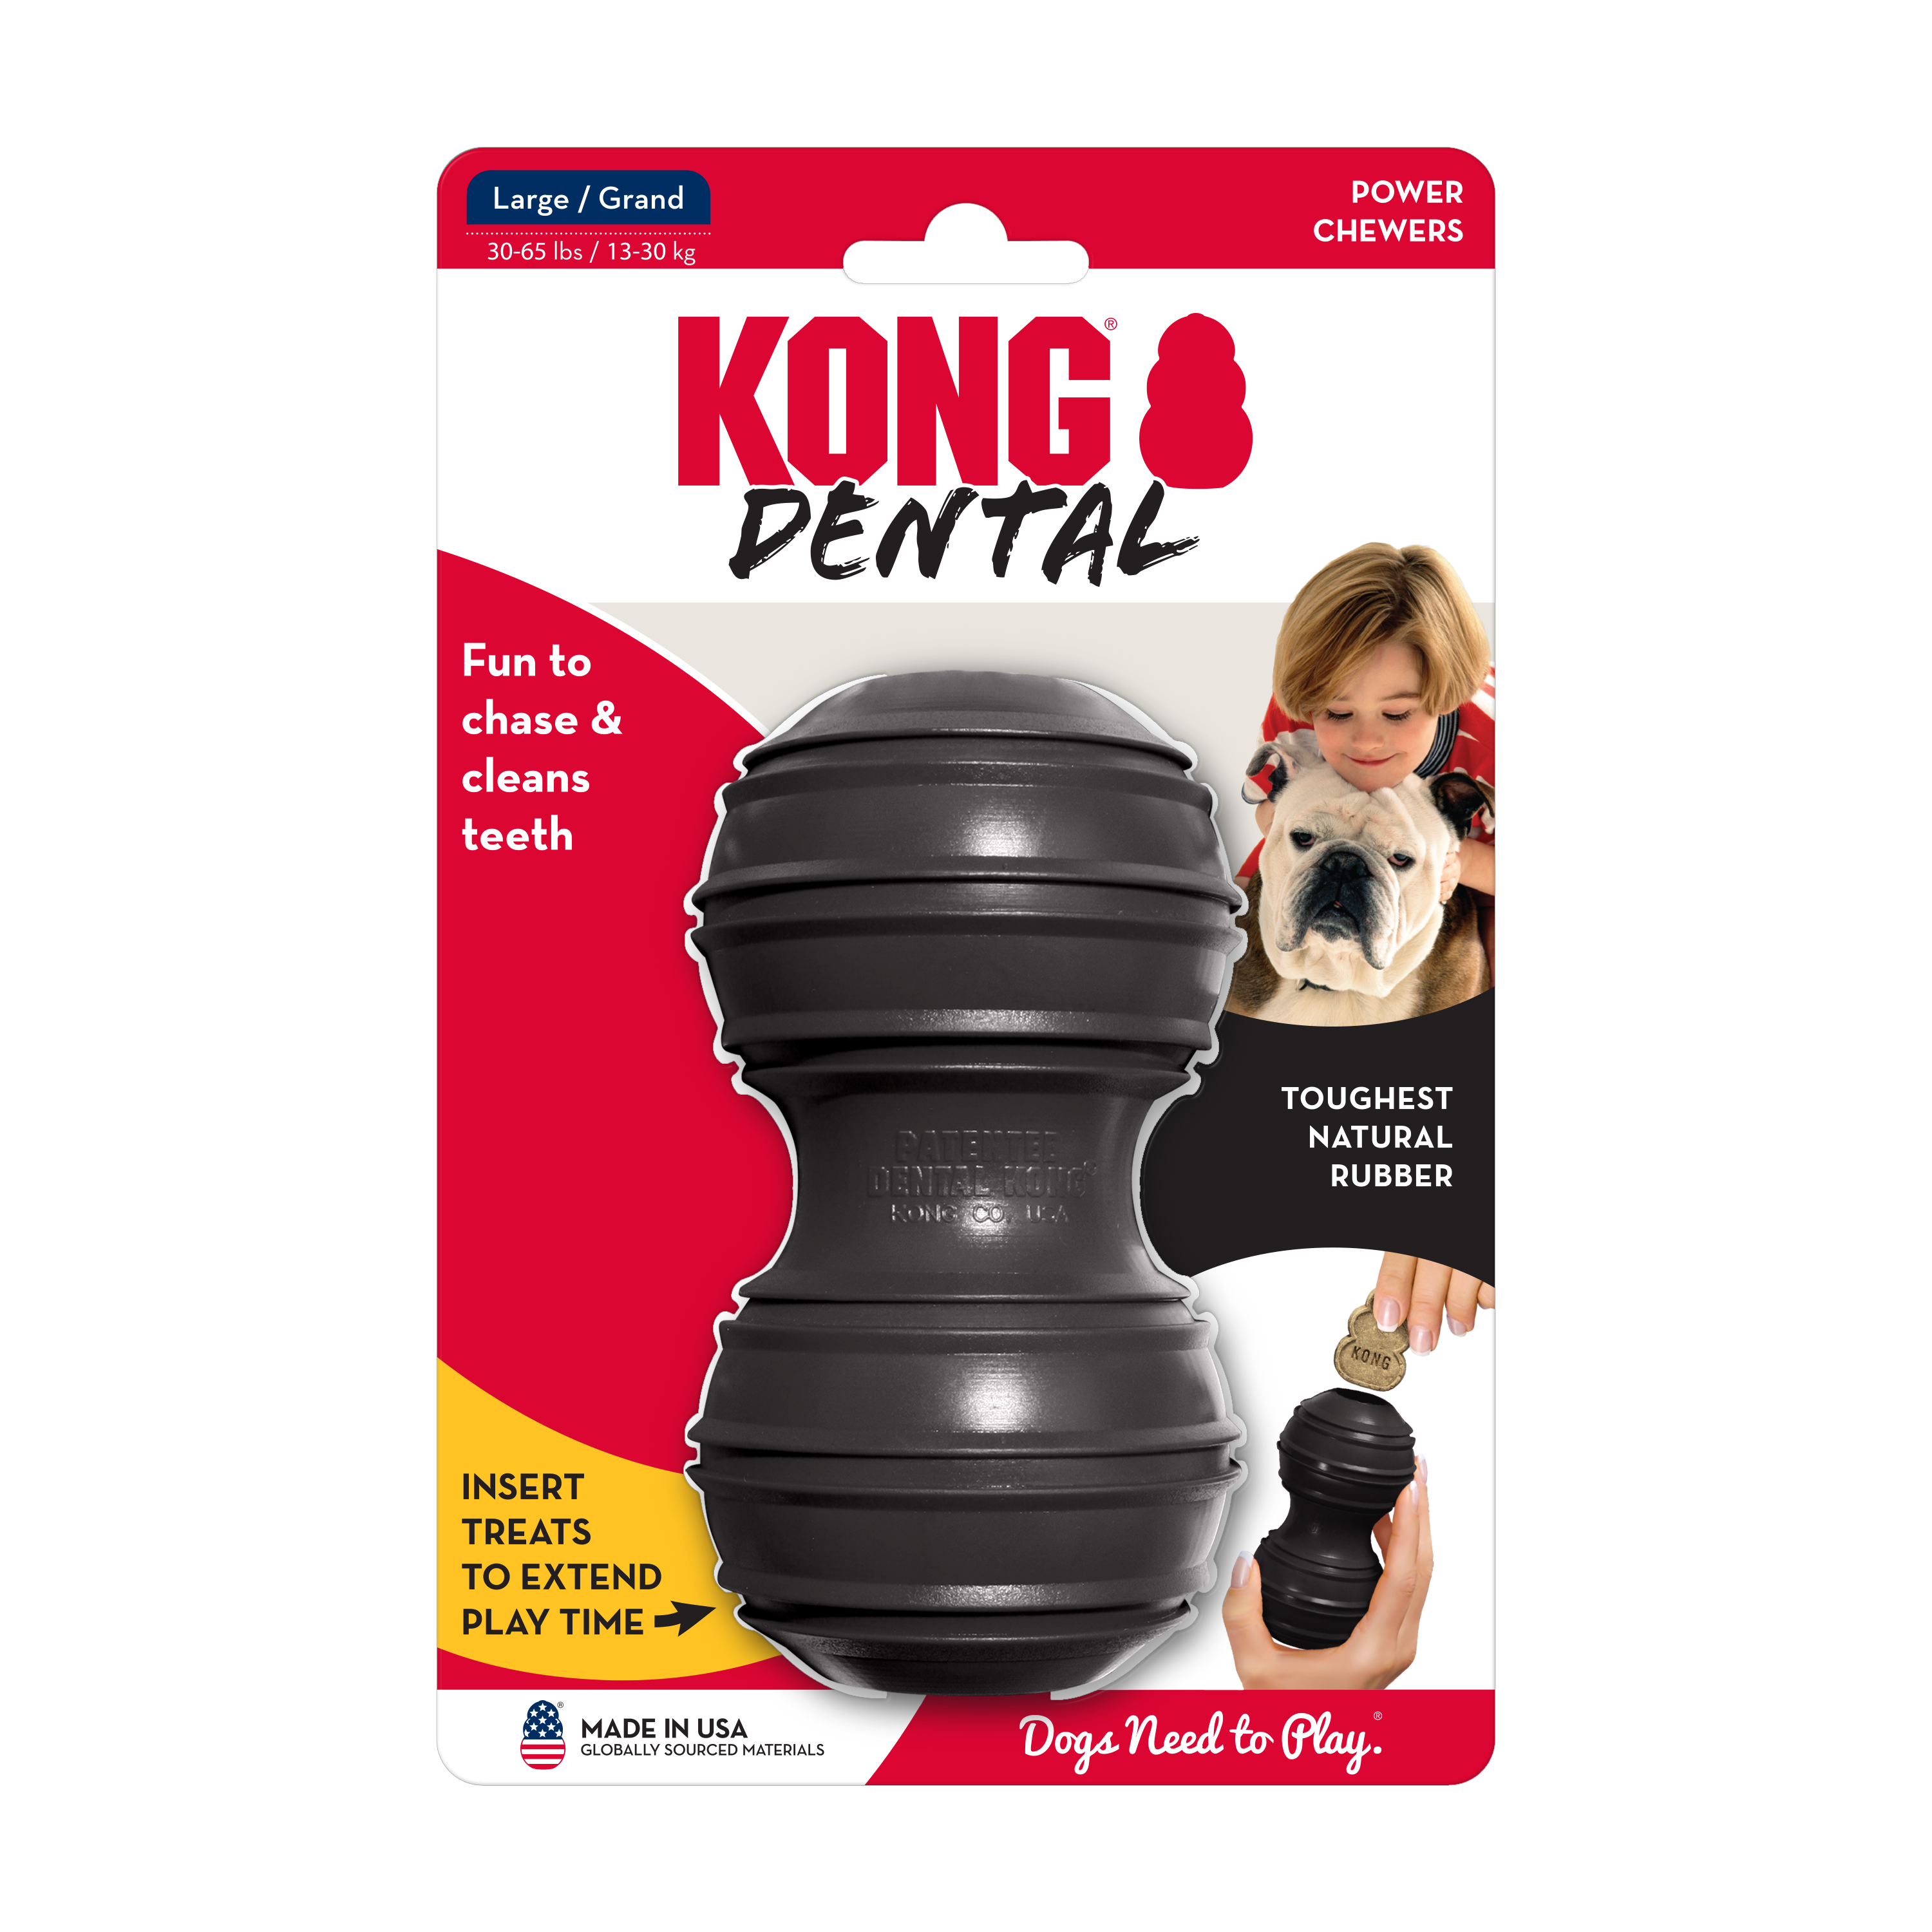 KONG Extreme Dental onpack product image